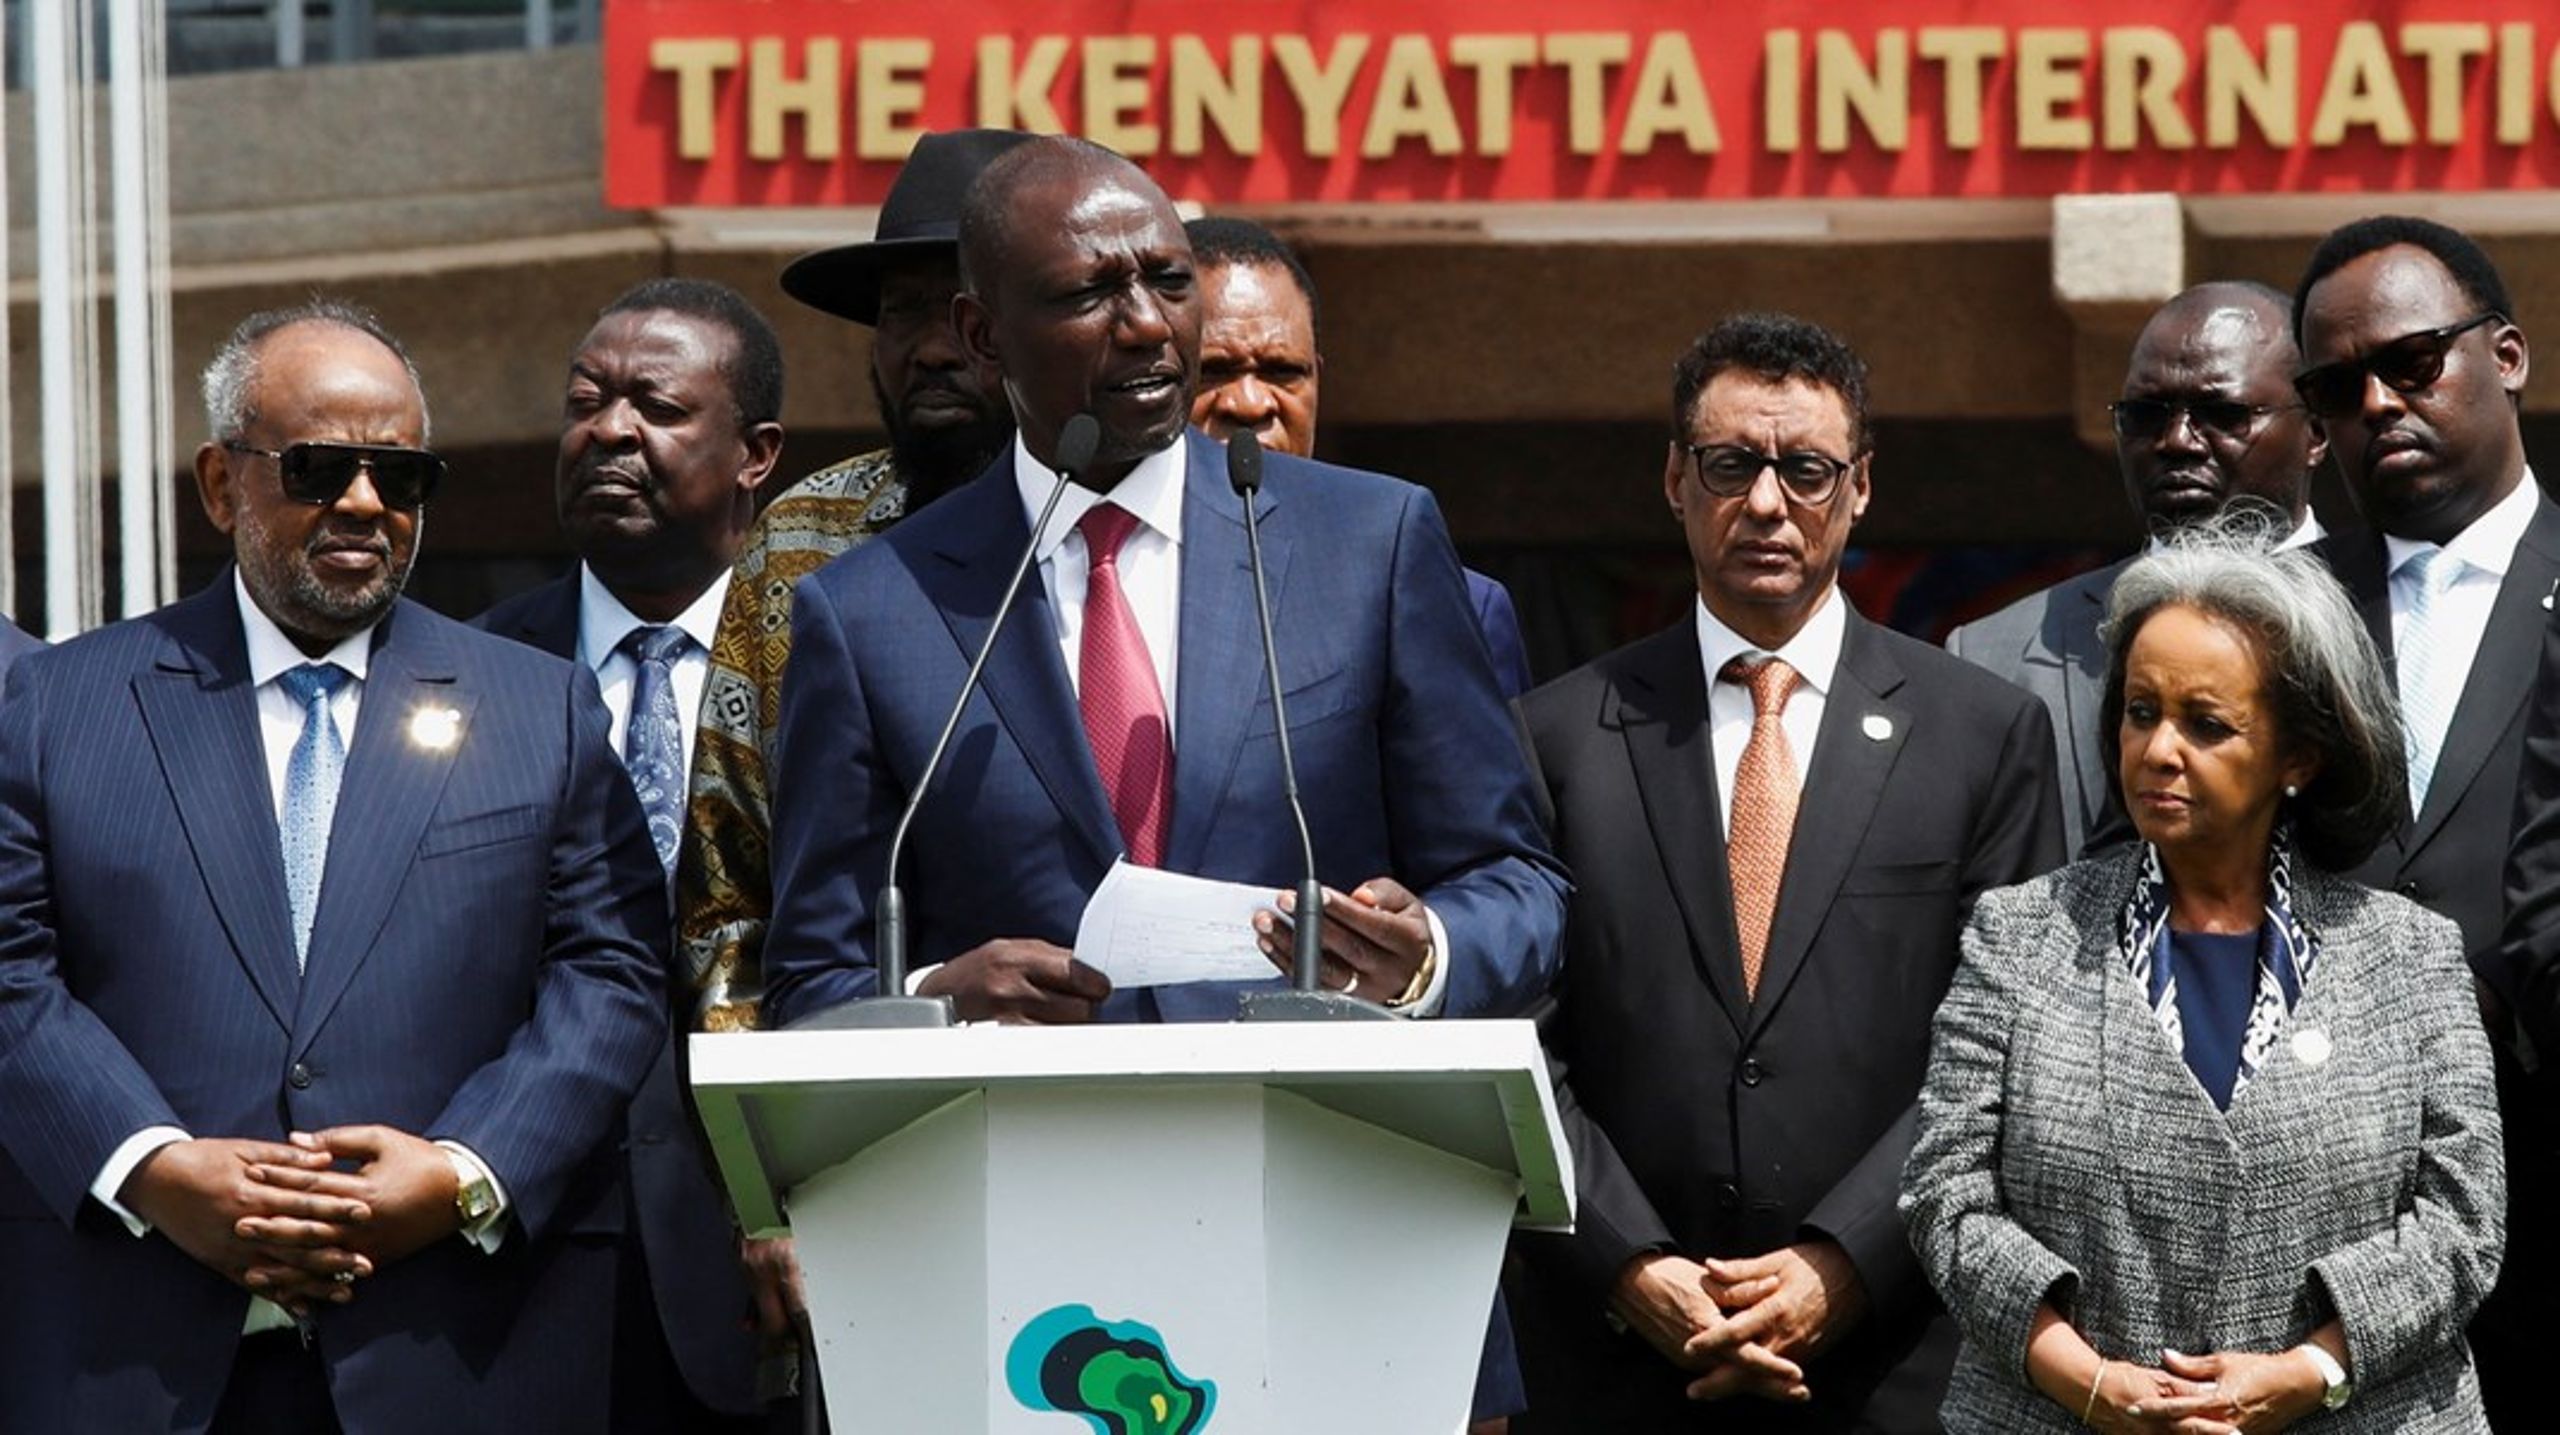 På klimatoppmøtet Africa Climate Summit 2023 ble Kenyas president William Ruto og øvrige statsledere fra det afrikanske kontinentet enige om å fortsette å holde toppmøter annethvert år. Landene oppfordrer også verdens ledere til å vurdere en global karbonskatt på handel med fossilt brensel, maritim transport og luftfart.